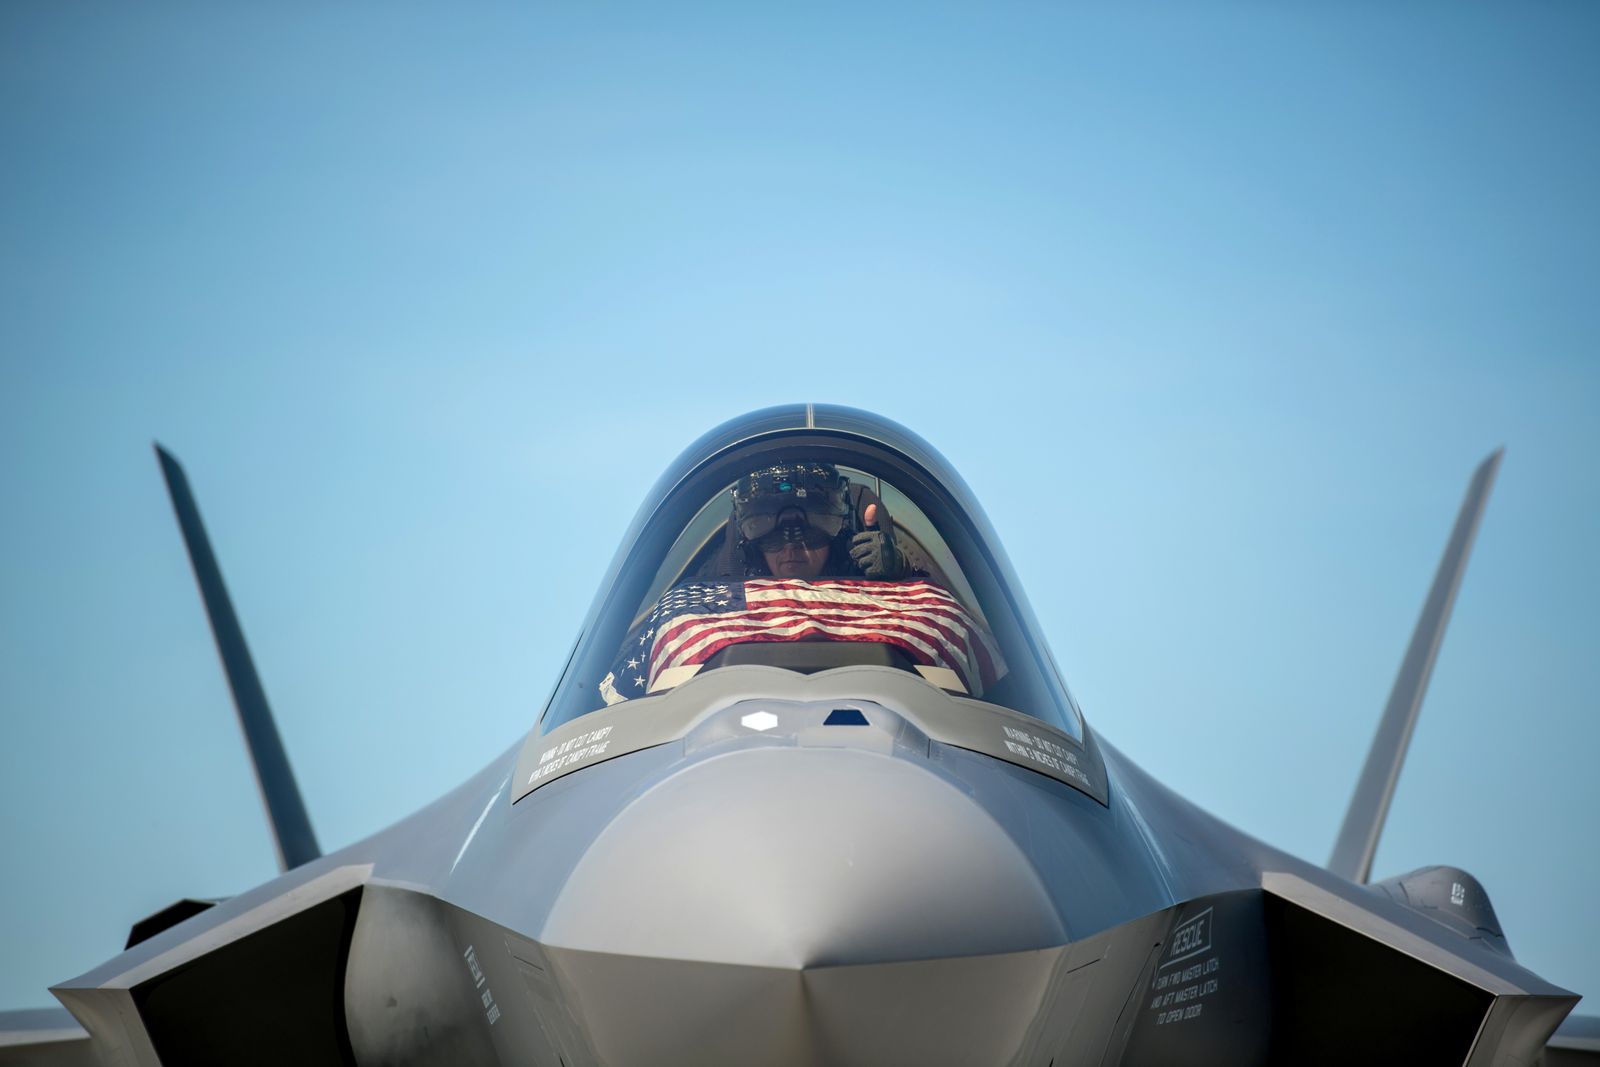 طائرة من طراز F-35 متشحة بعلم الولايات المتحدة تستعد للإقلاع من قاعدة فيرمونت الجوية، مايو 22 مايو 2020  - via REUTERS